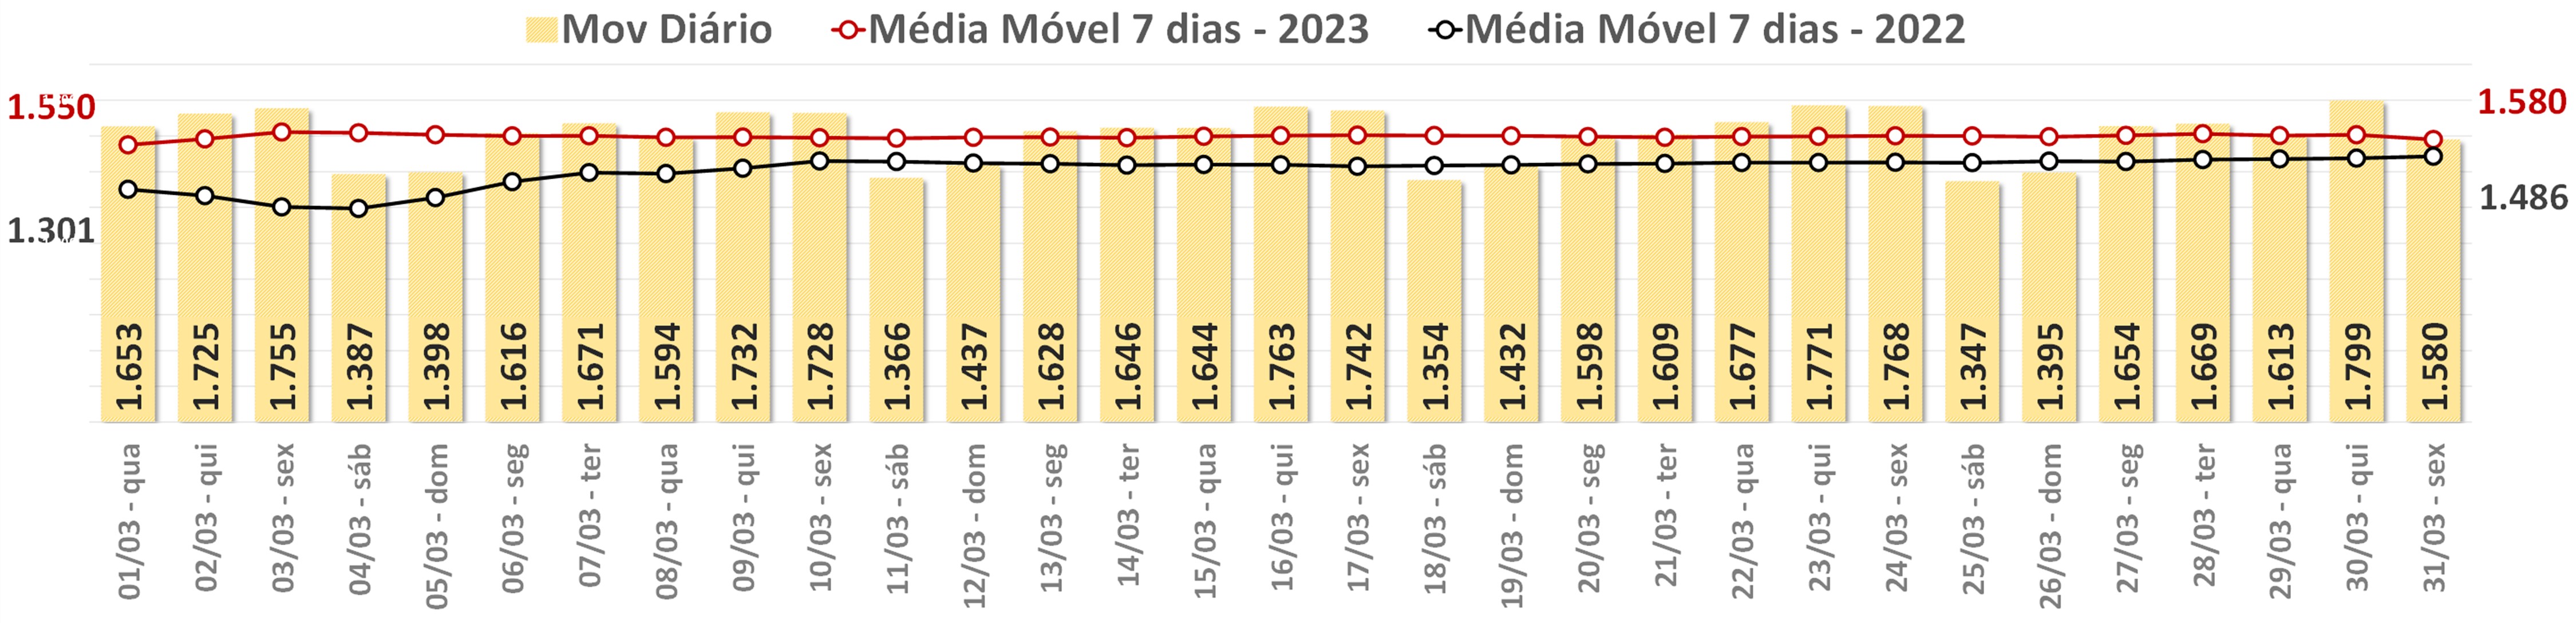 7 Movimentos Diários e Média Móvel do último mês - SBBS Brasília - JPG